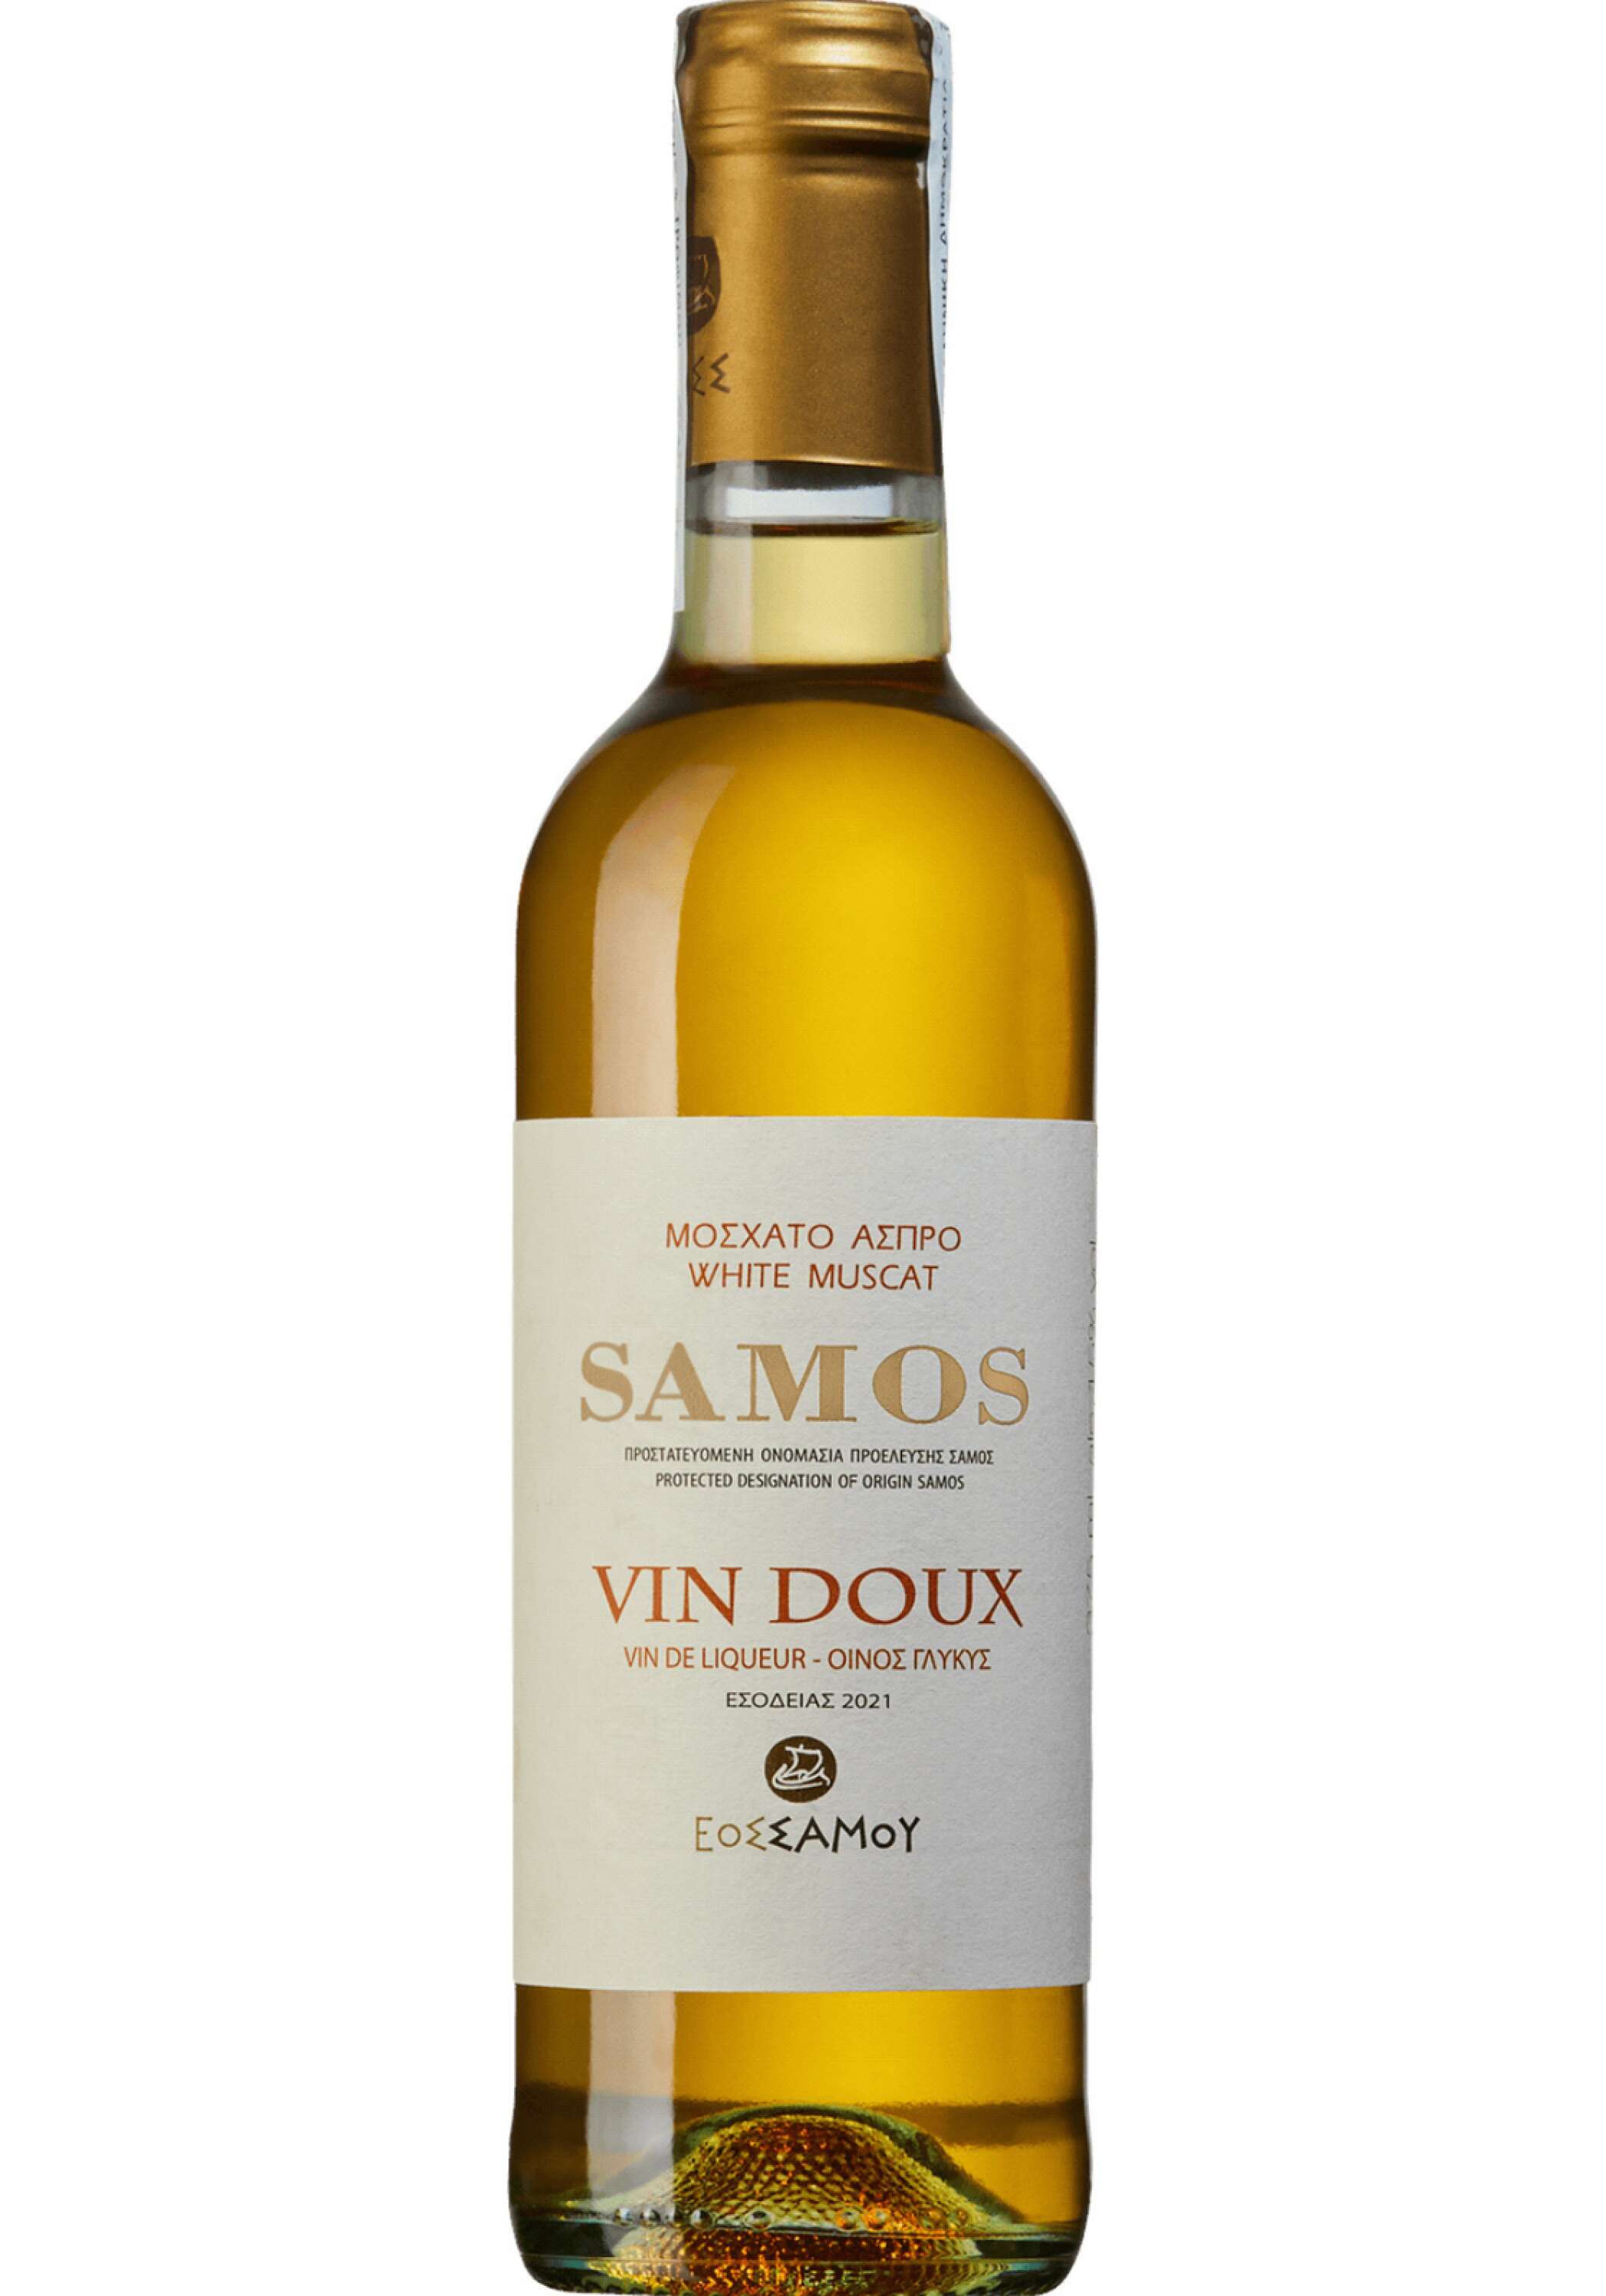 Samos Vin Doux